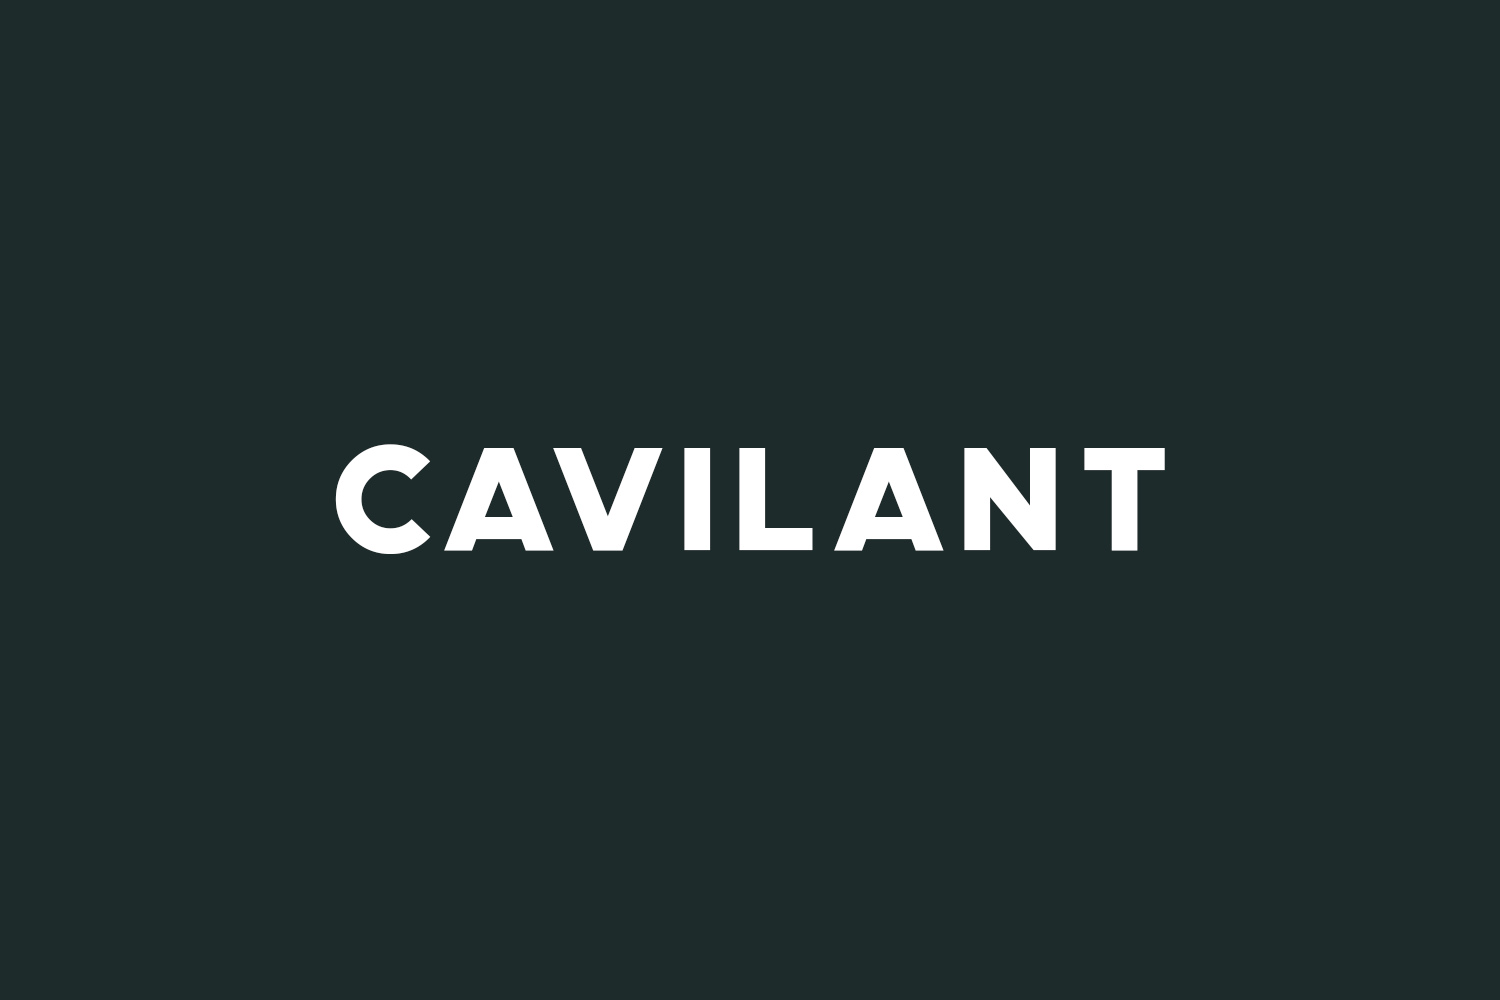 Cavilant Free Font